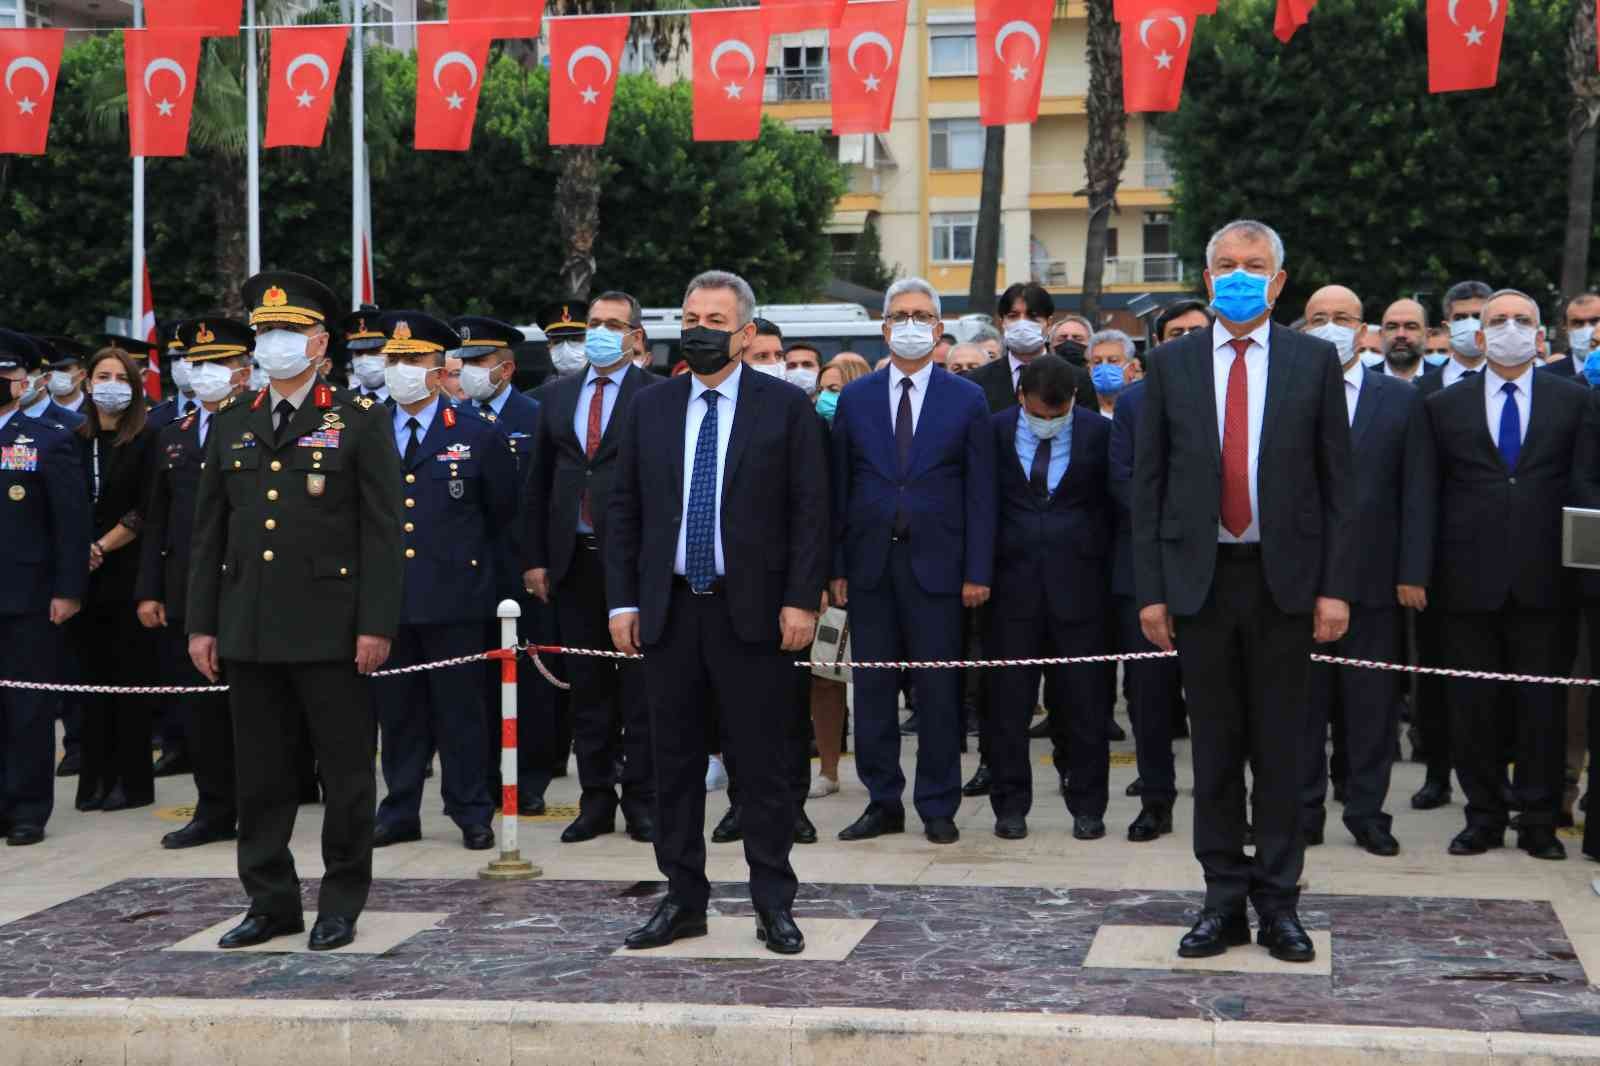 Adana’da Atatürk’ü anma töreni #adana